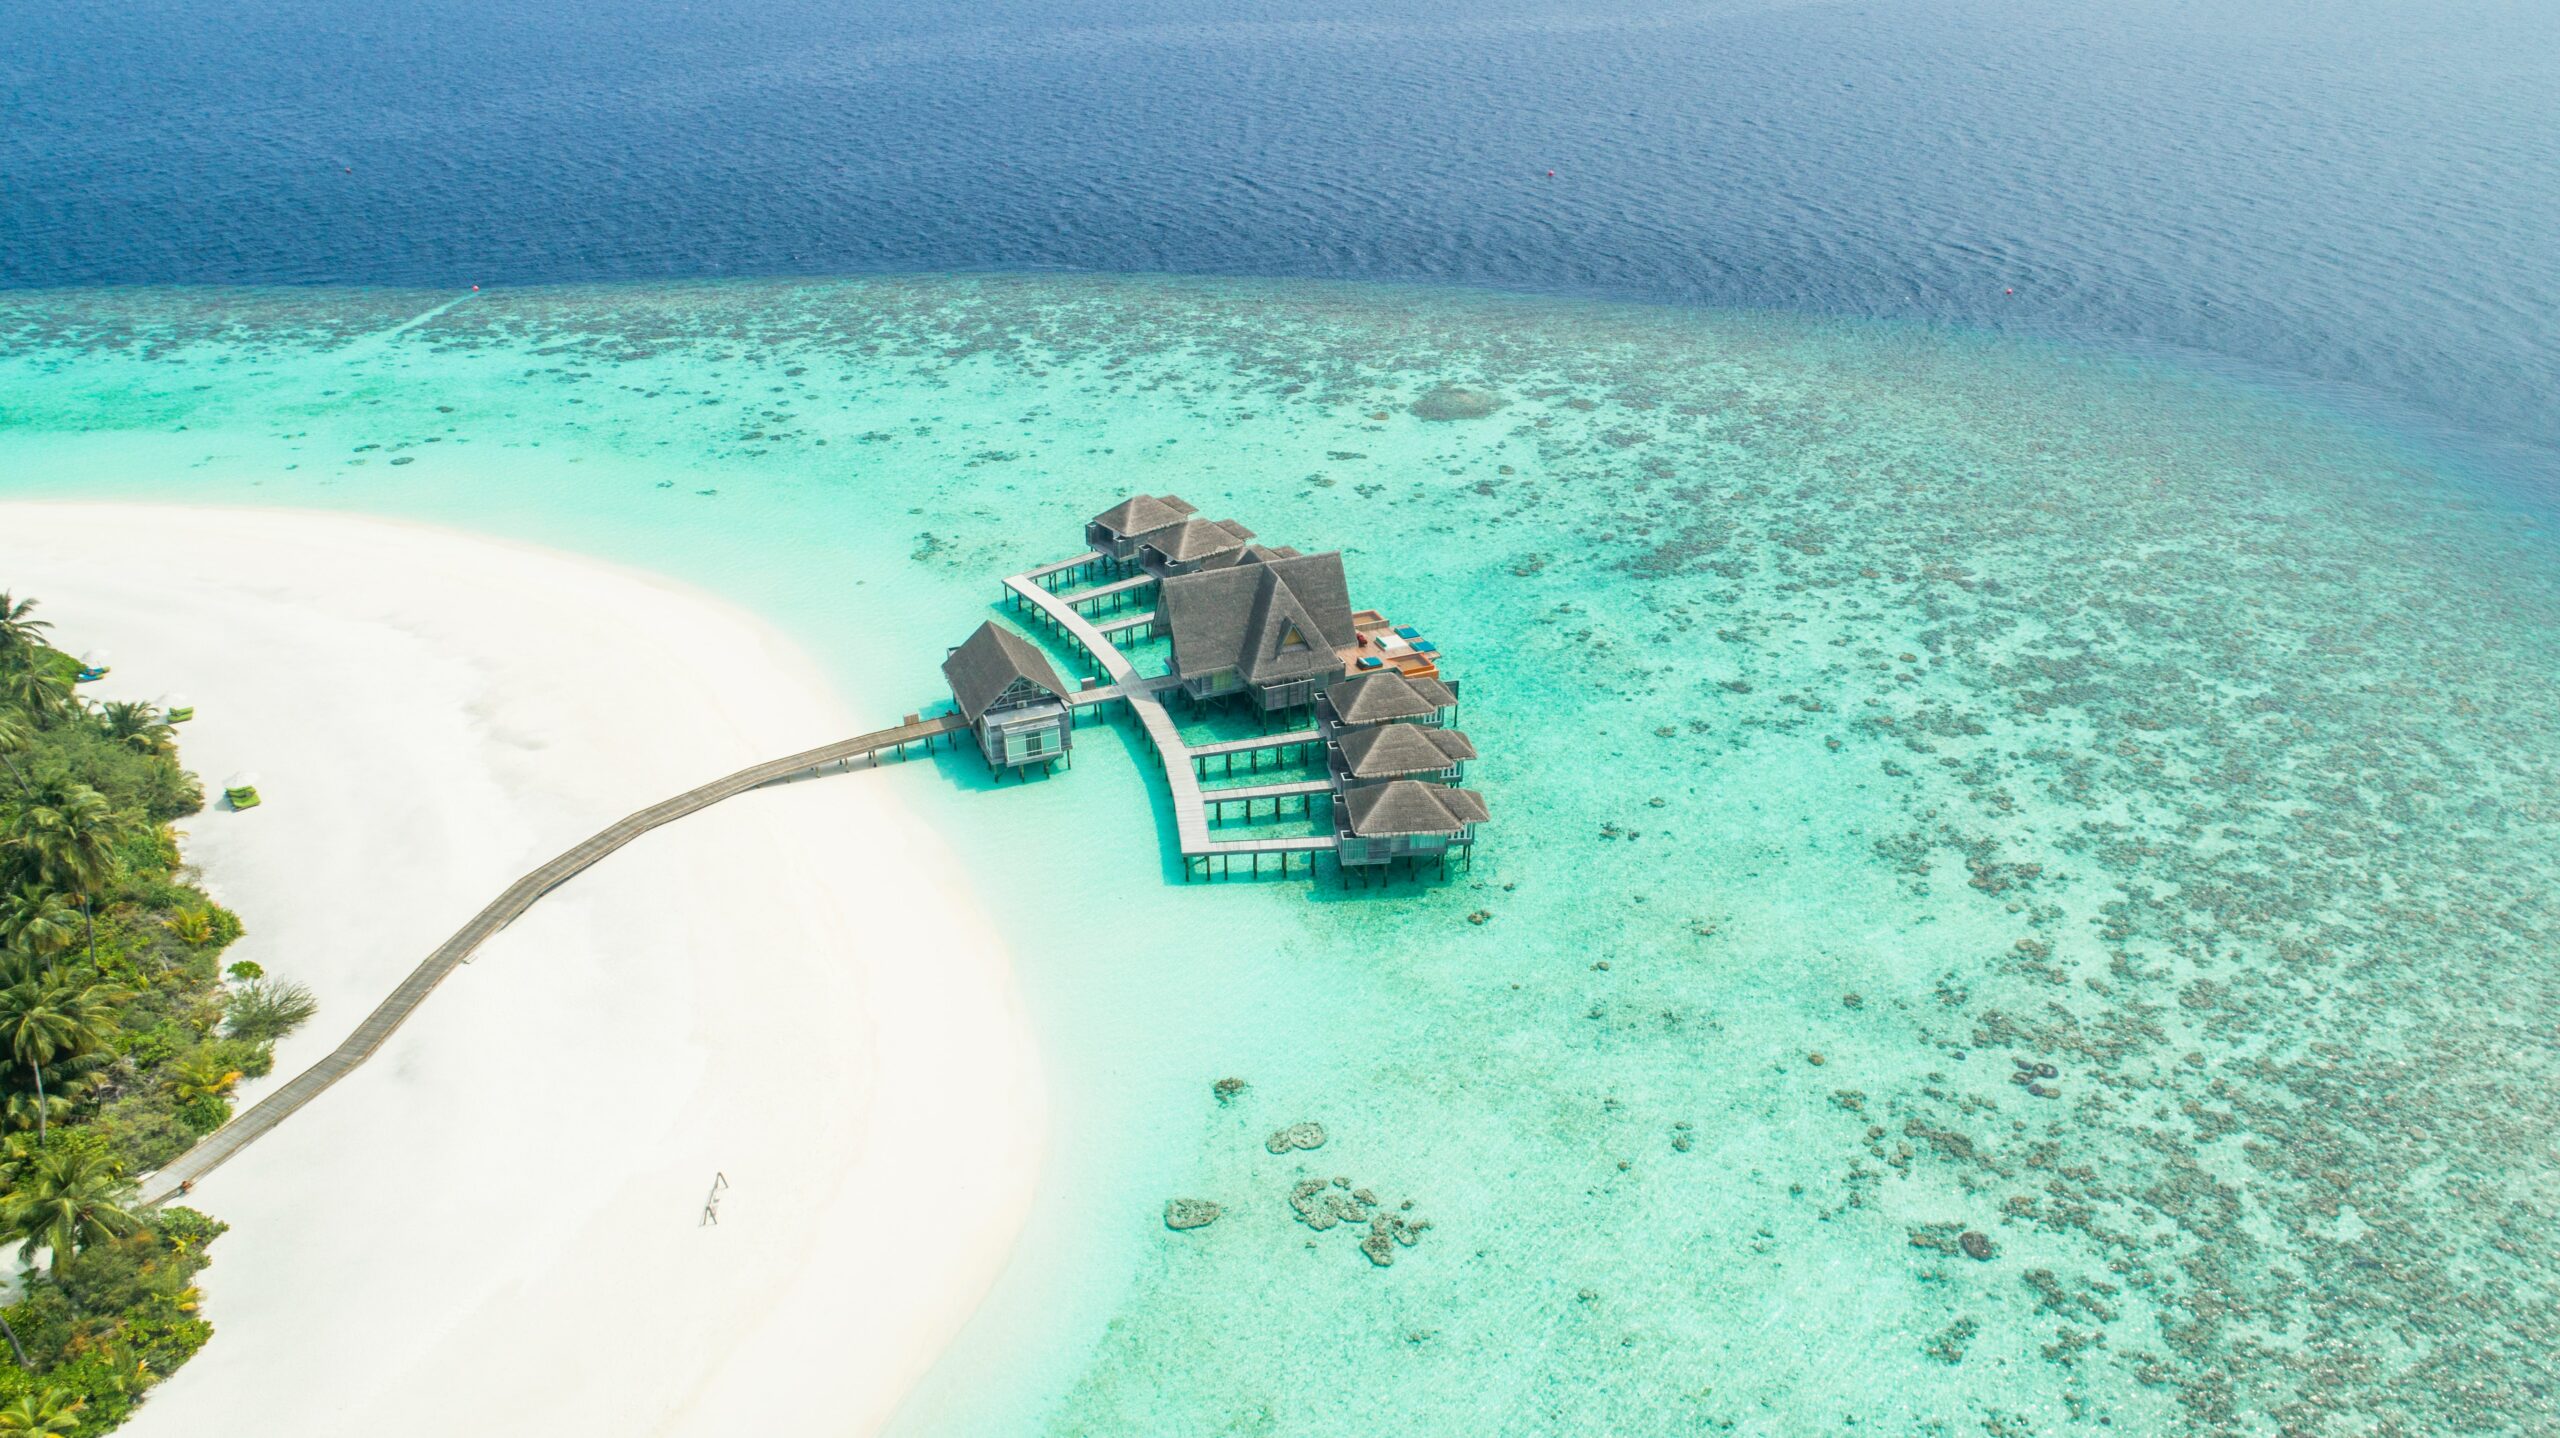 Planejar uma viagem. Foto área das Ilhas Maldivas. Mar azul turquesa e areia branca.